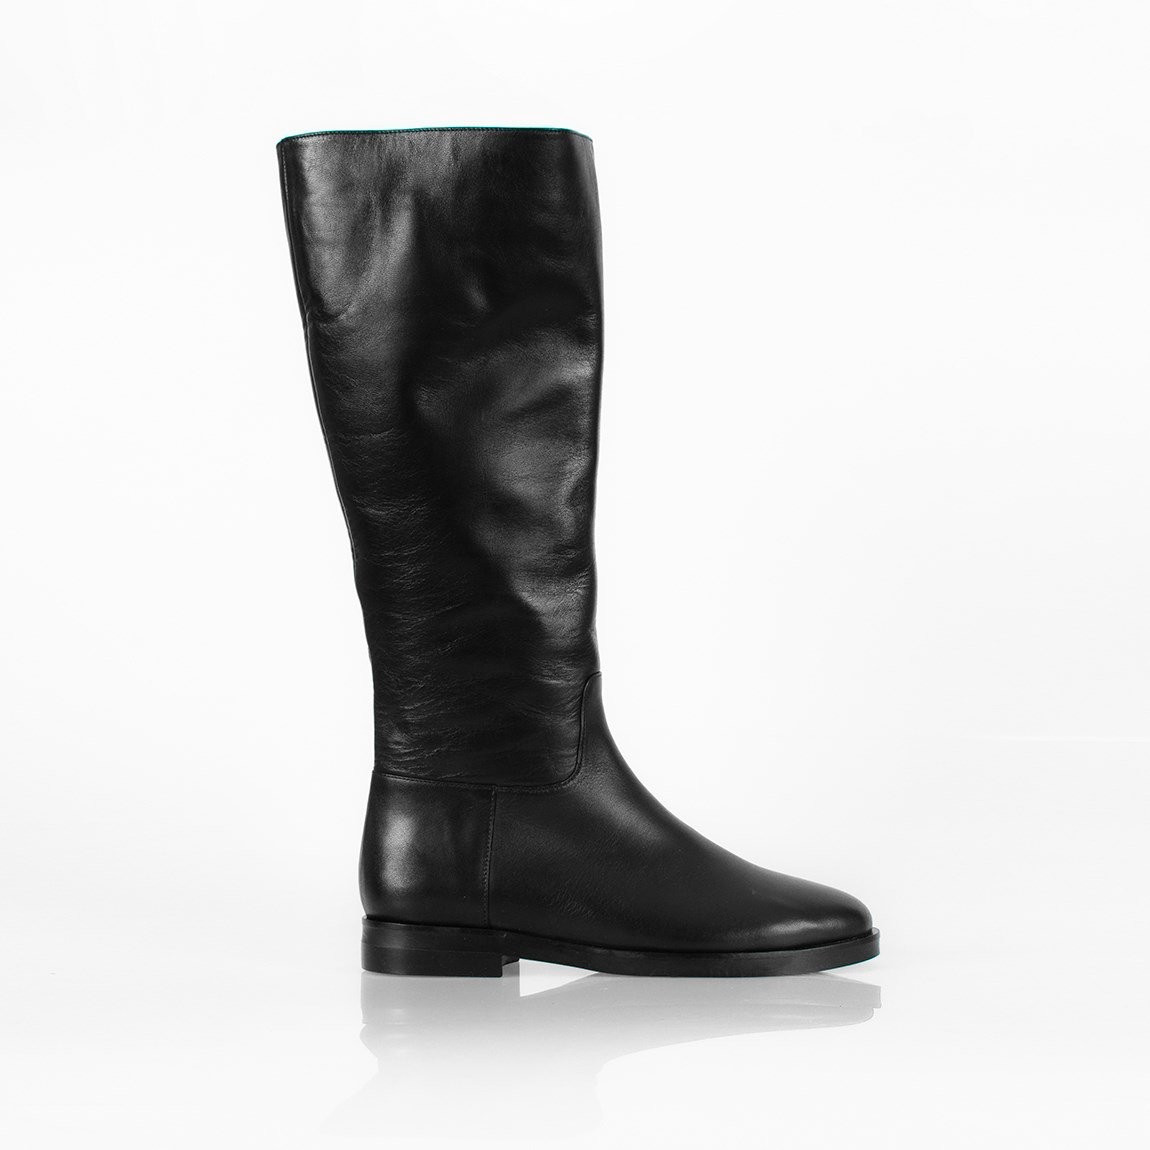 Jabotter Alexa Black Leather Heeled Boots